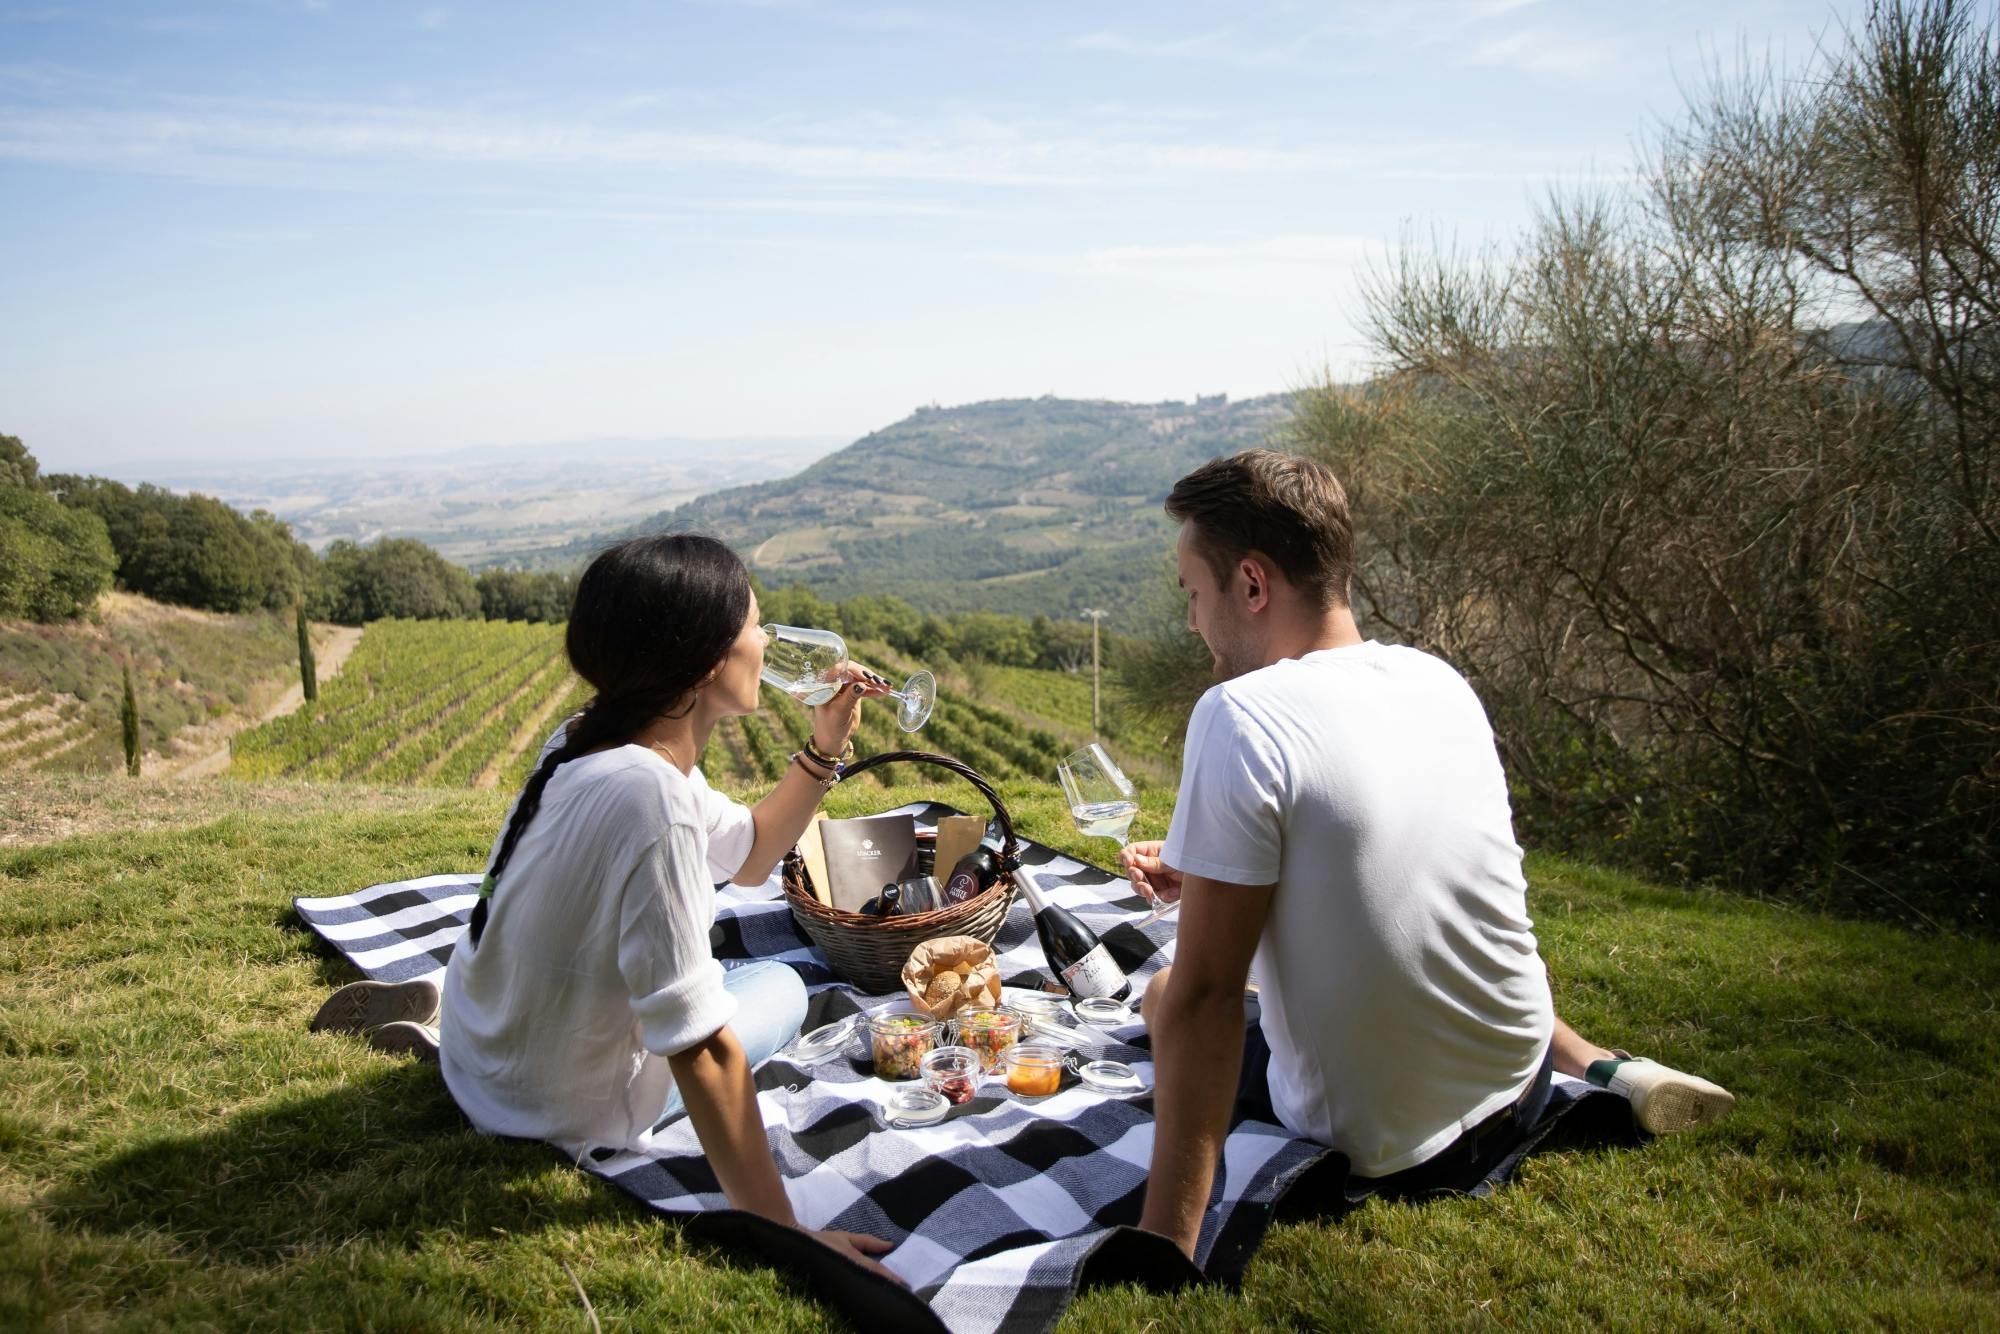 Piknik z butelką wina w Montalcino z opcjonalną wycieczką po winnicach